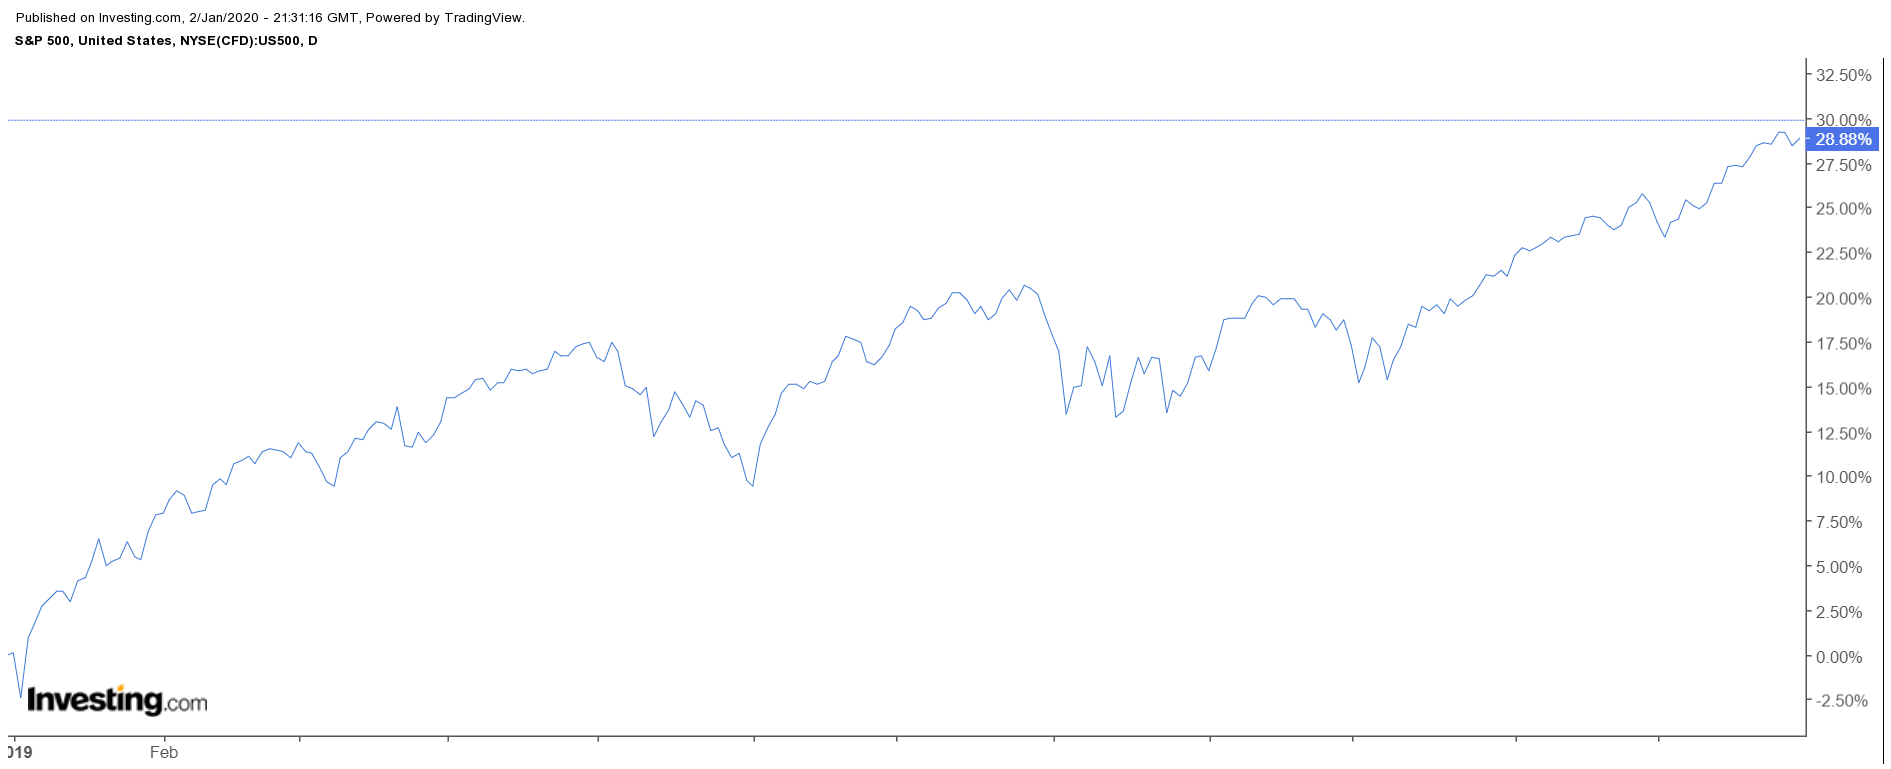 S&P 500 Daily Price Chart